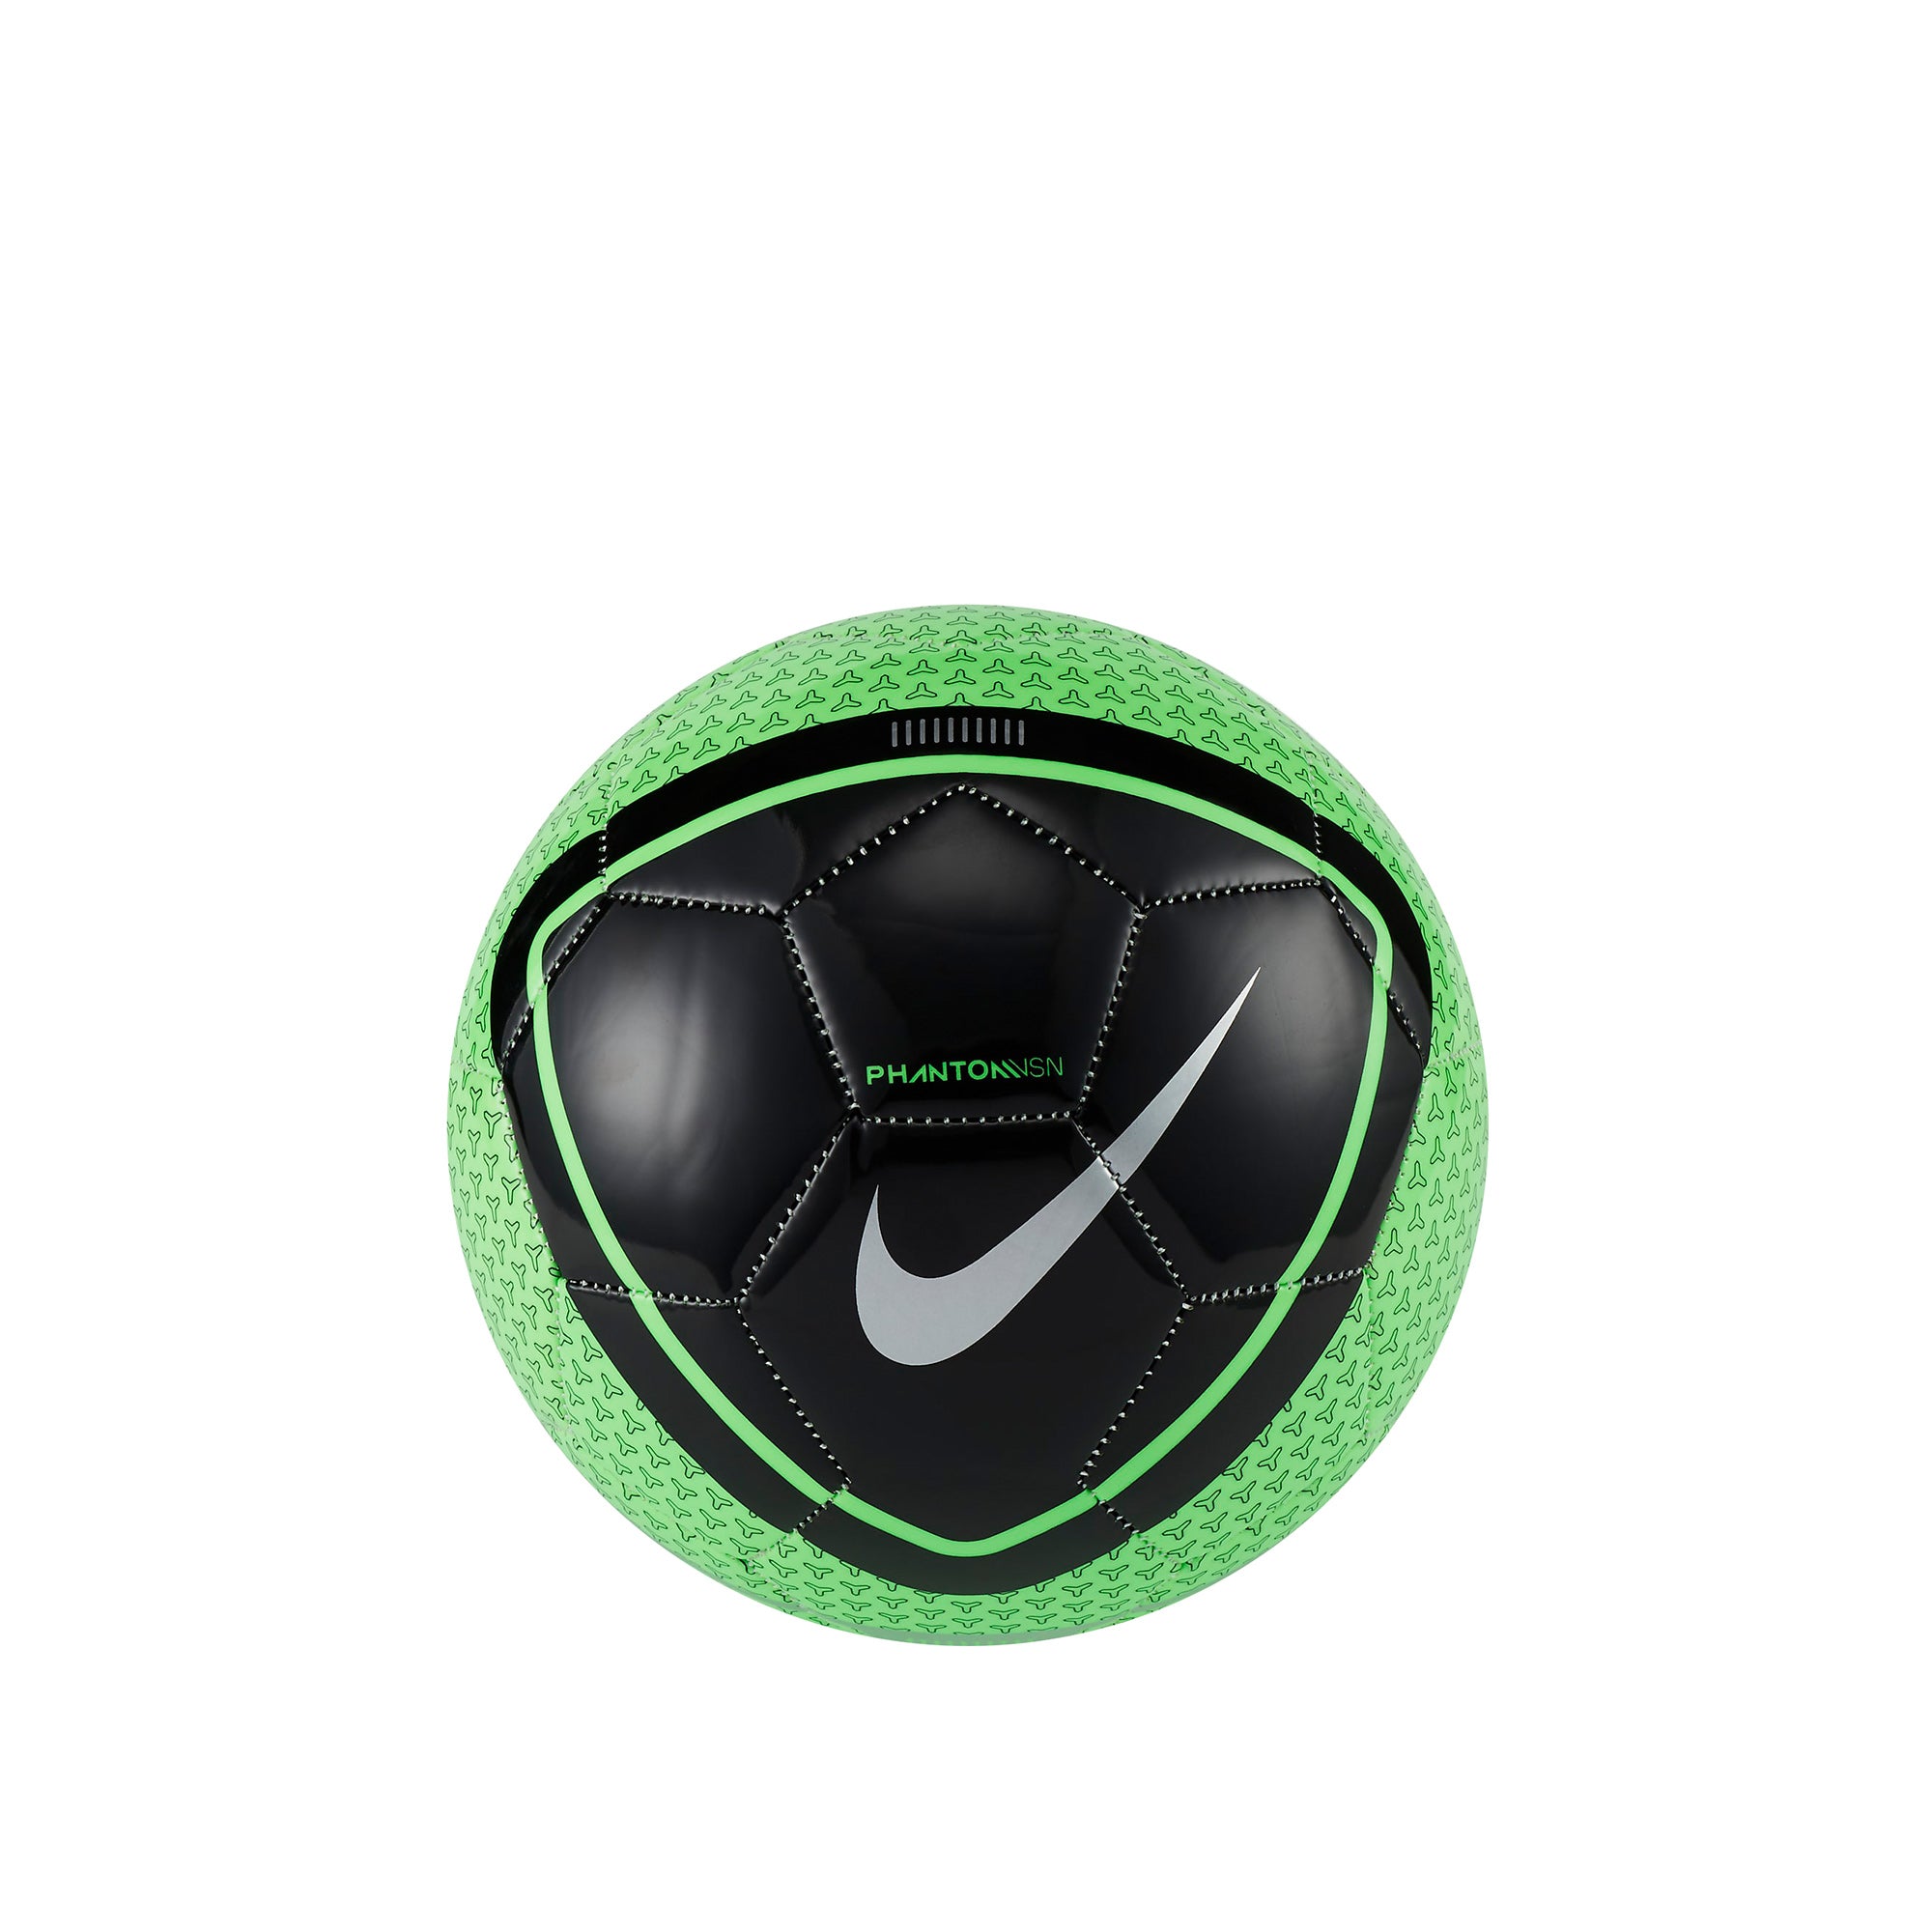 Hãy cùng ngắm nhìn chiếc giày bóng đá Banh Nike Phantom Vision với thiết kế đẹp mắt và hiệu suất đáng kinh ngạc. Đôi giày này được thiết kế cho cả nam lẫn nữ và sẽ giúp bạn luôn tự tin trên sân cỏ. Hãy cùng chiêm ngưỡng chi tiết đầy ấn tượng của đôi giày này qua hình ảnh.